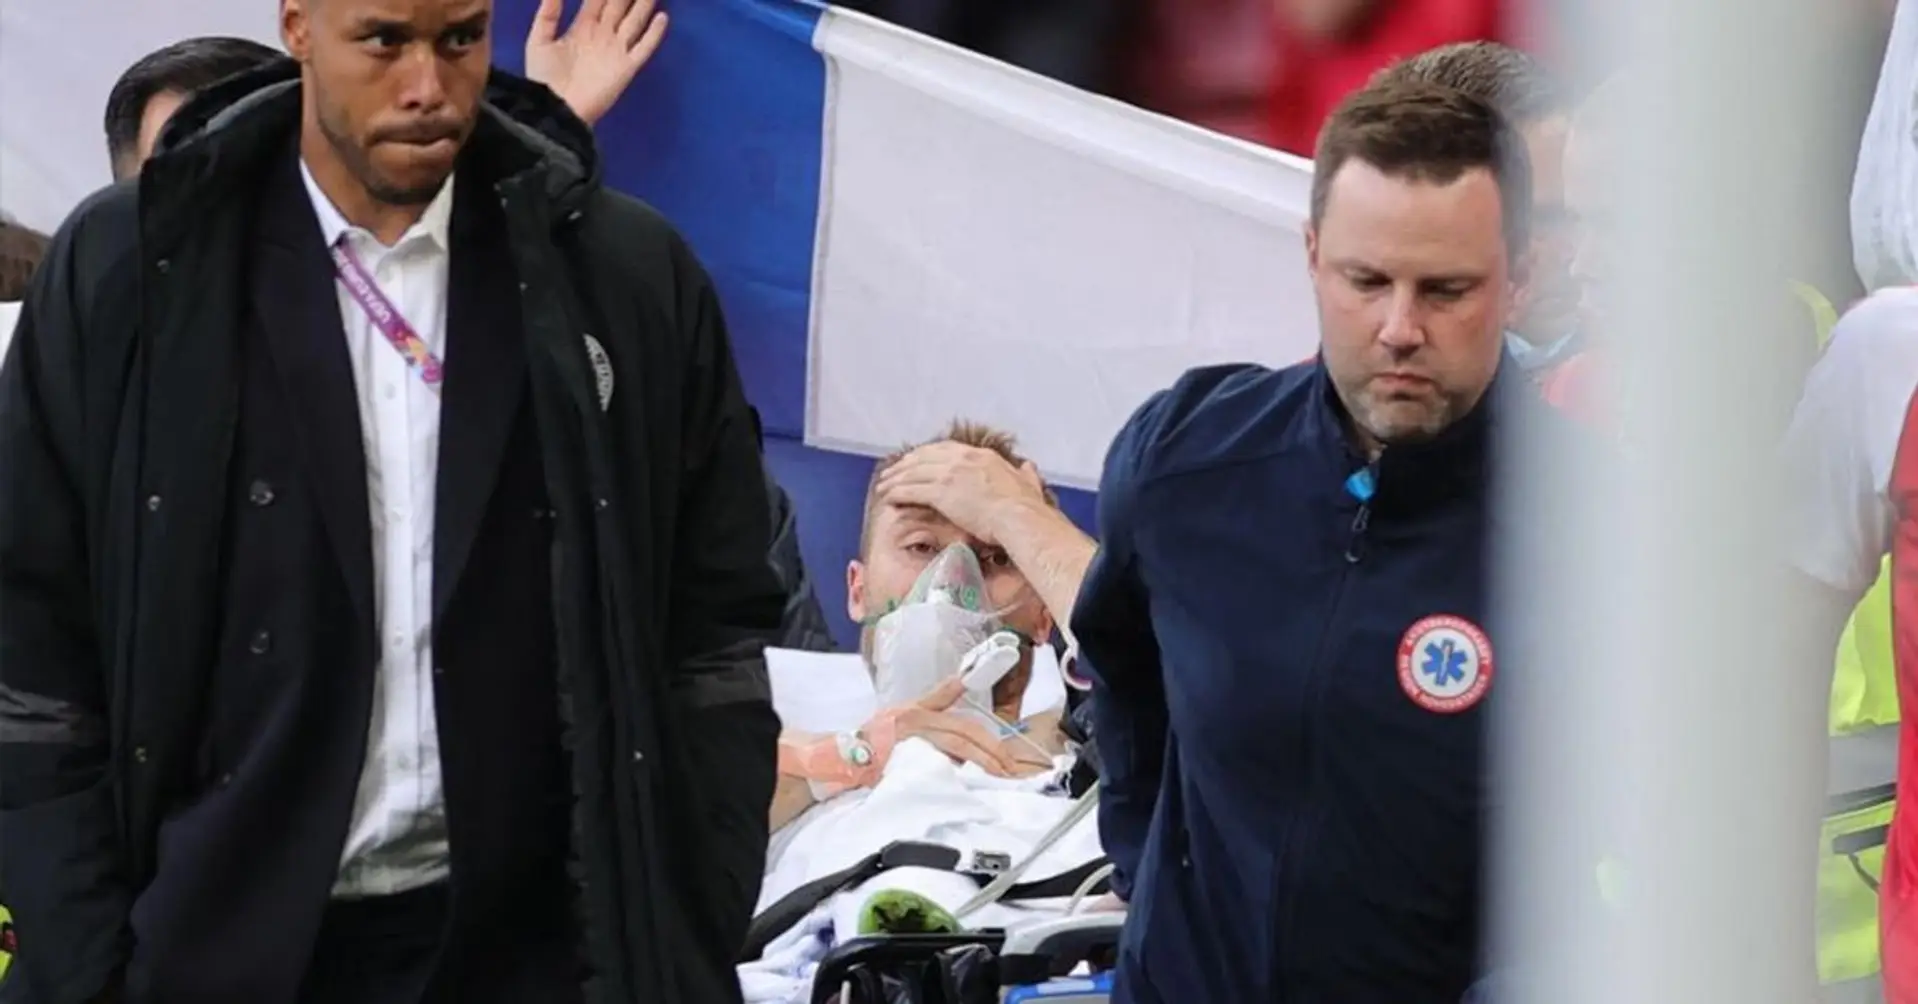 Christian Eriksen salió del estadio despierto y respirando, la UEFA confirma que se ha estabilizado